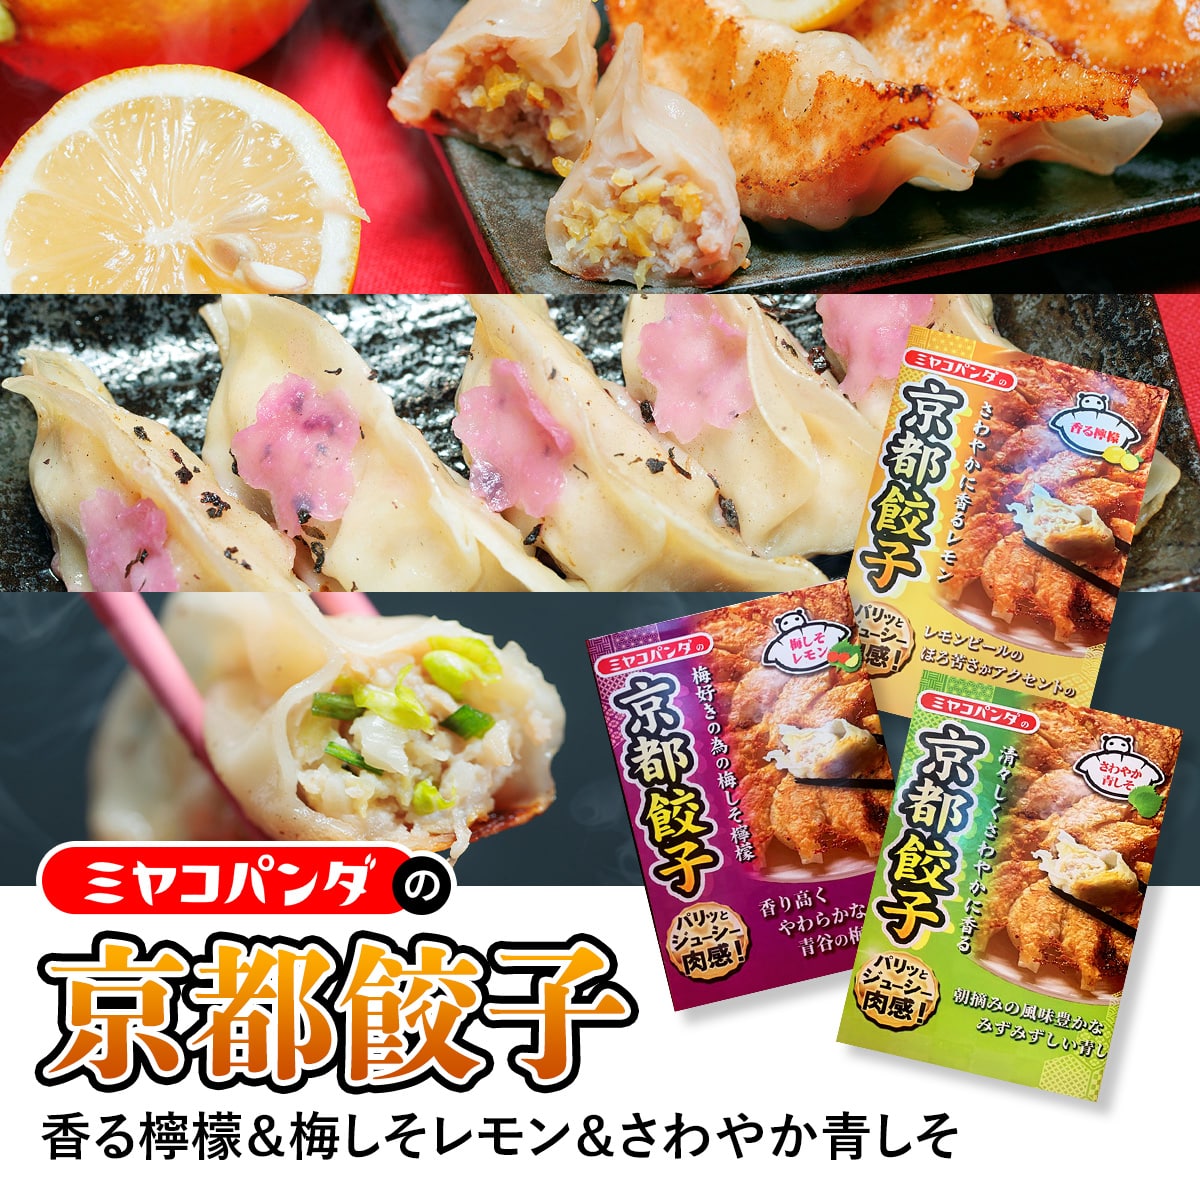 ミヤコパンダの京都餃子3種セット 合計48個 香る檸檬&梅しそレモン&さわやか青しそ 餃子 ギョウザ